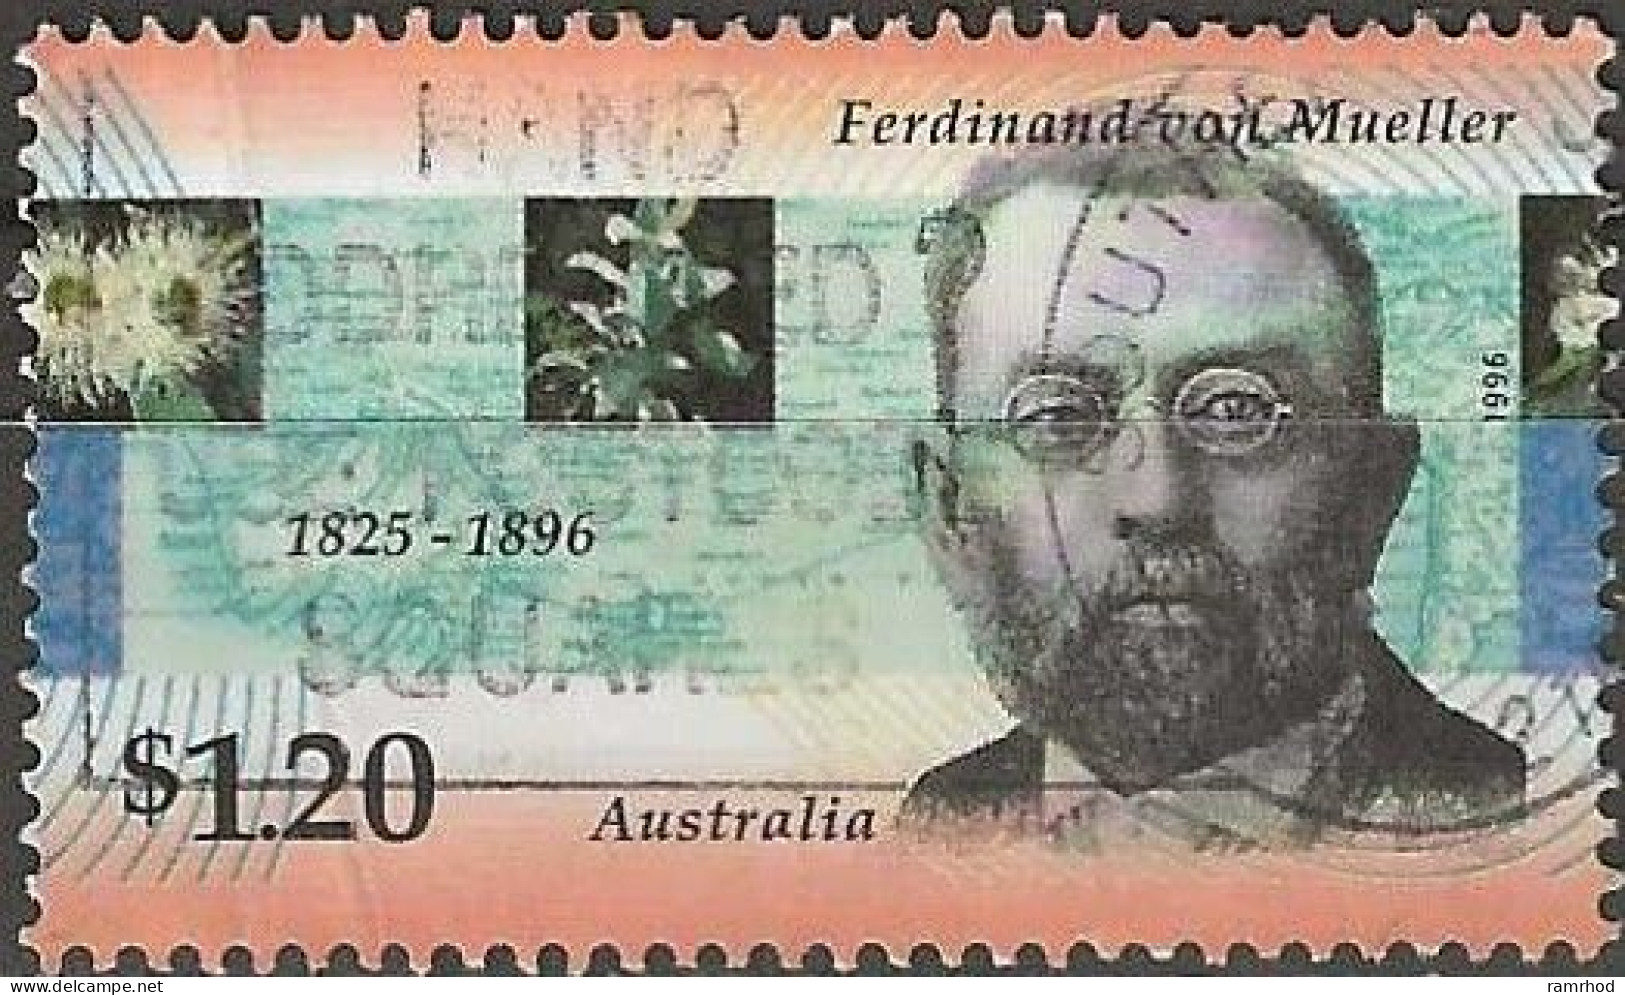 AUSTRALIA 1996 Death Centenary Of Ferdinand Von Mueller (botanist) - $1.20 Ferdinand Von Mueller FU - Used Stamps